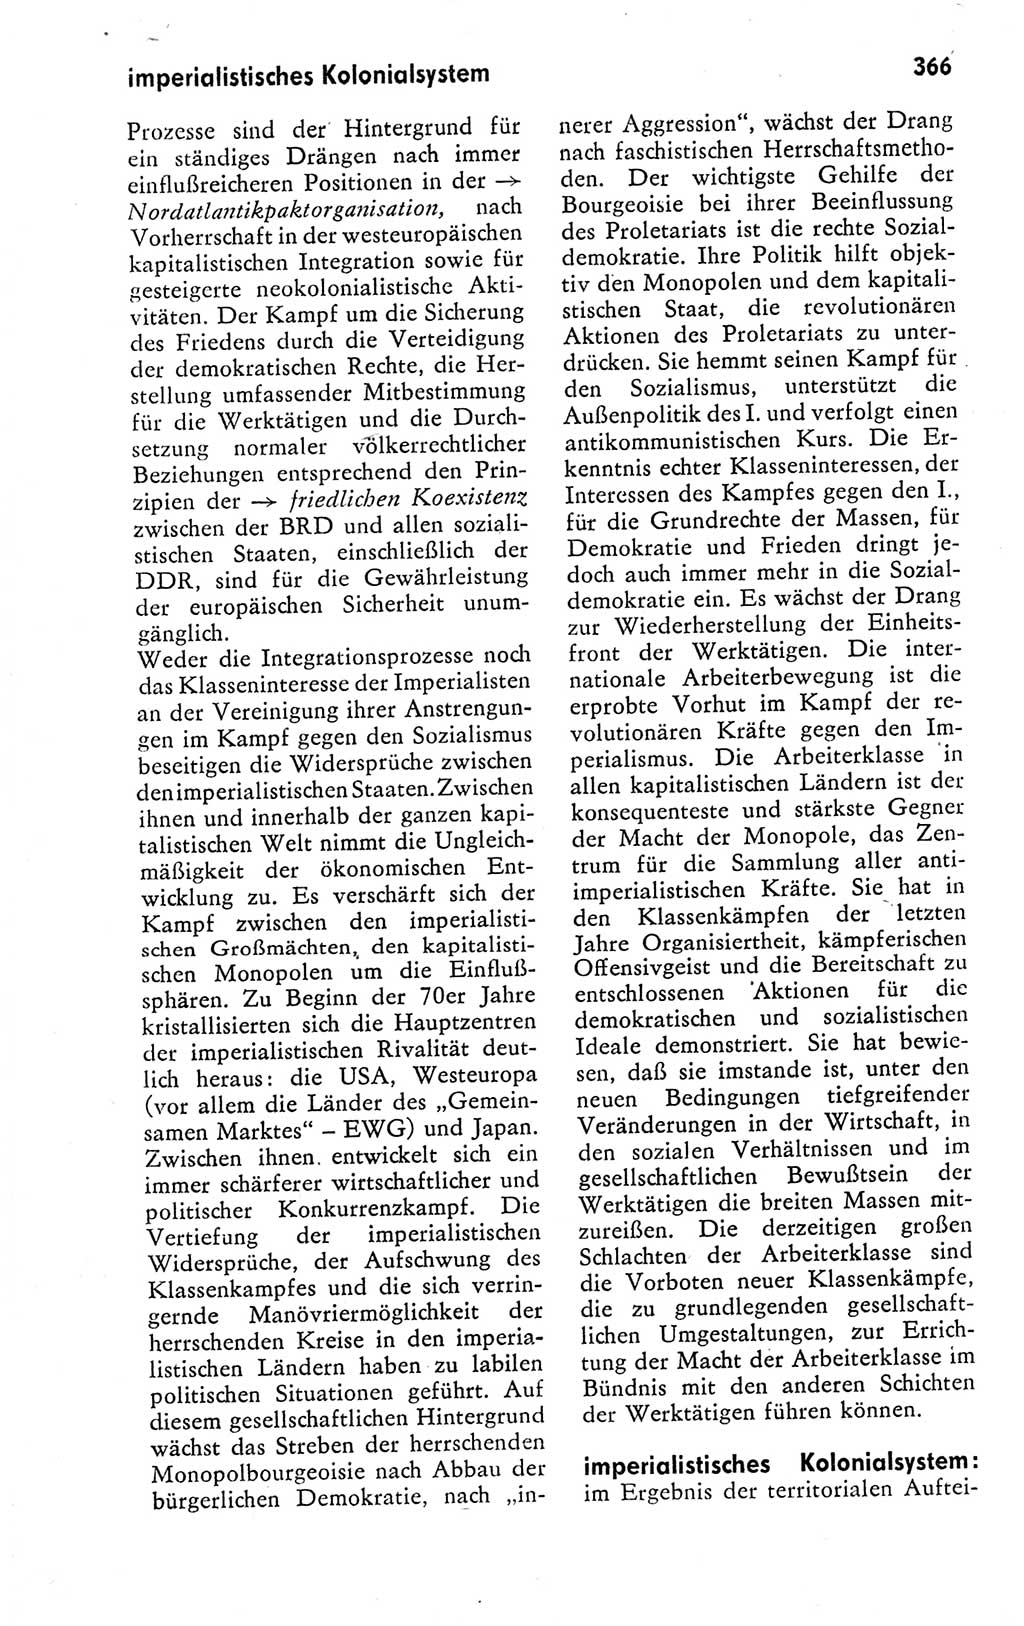 Kleines politisches Wörterbuch [Deutsche Demokratische Republik (DDR)] 1978, Seite 366 (Kl. pol. Wb. DDR 1978, S. 366)